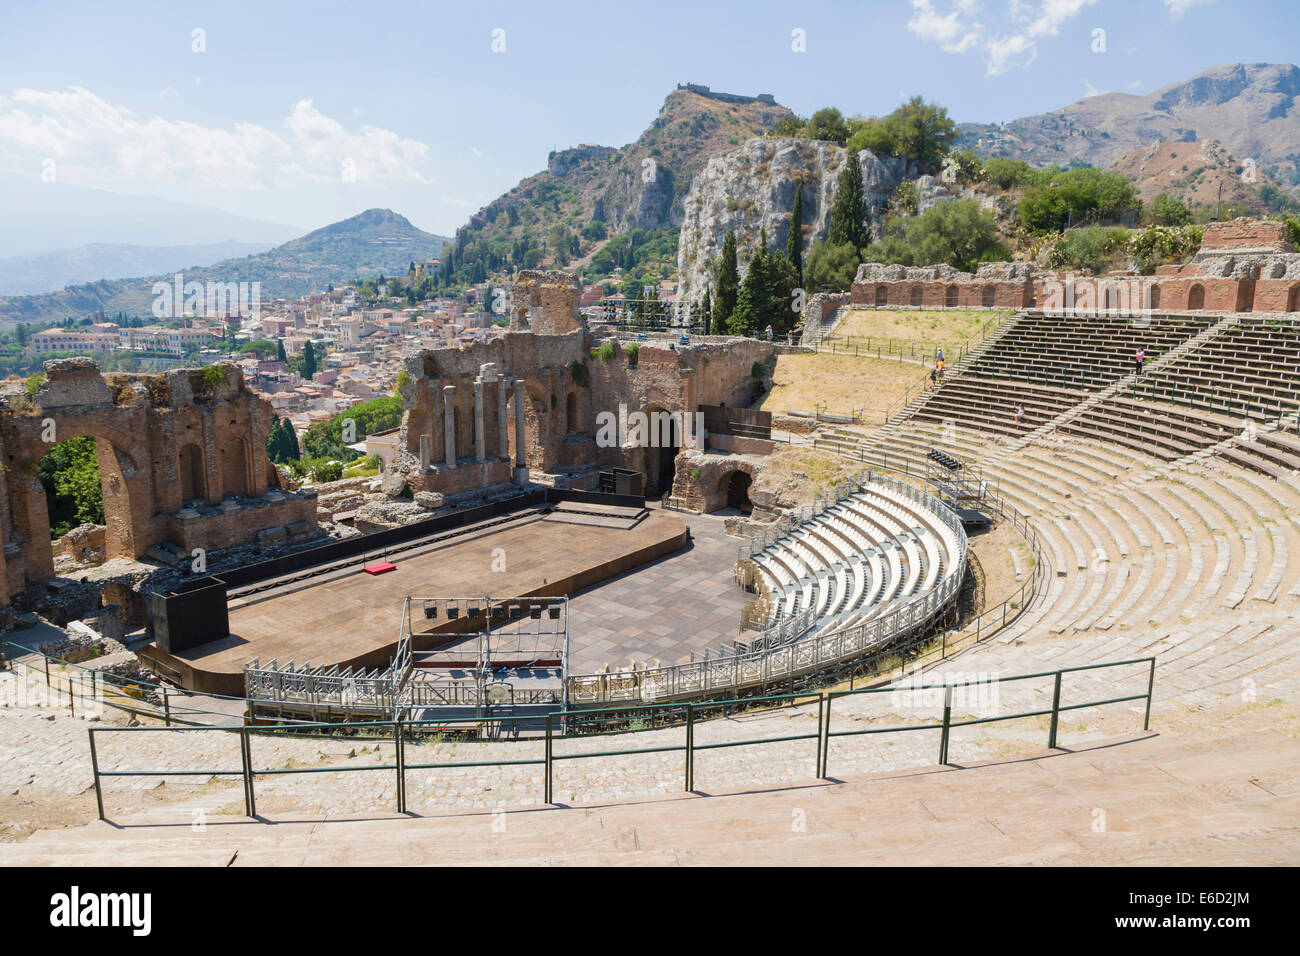 Teatro Antico di Taormina, ancient theatre, Taormina, Province of Messina, Sicily, Italy Stock Photo